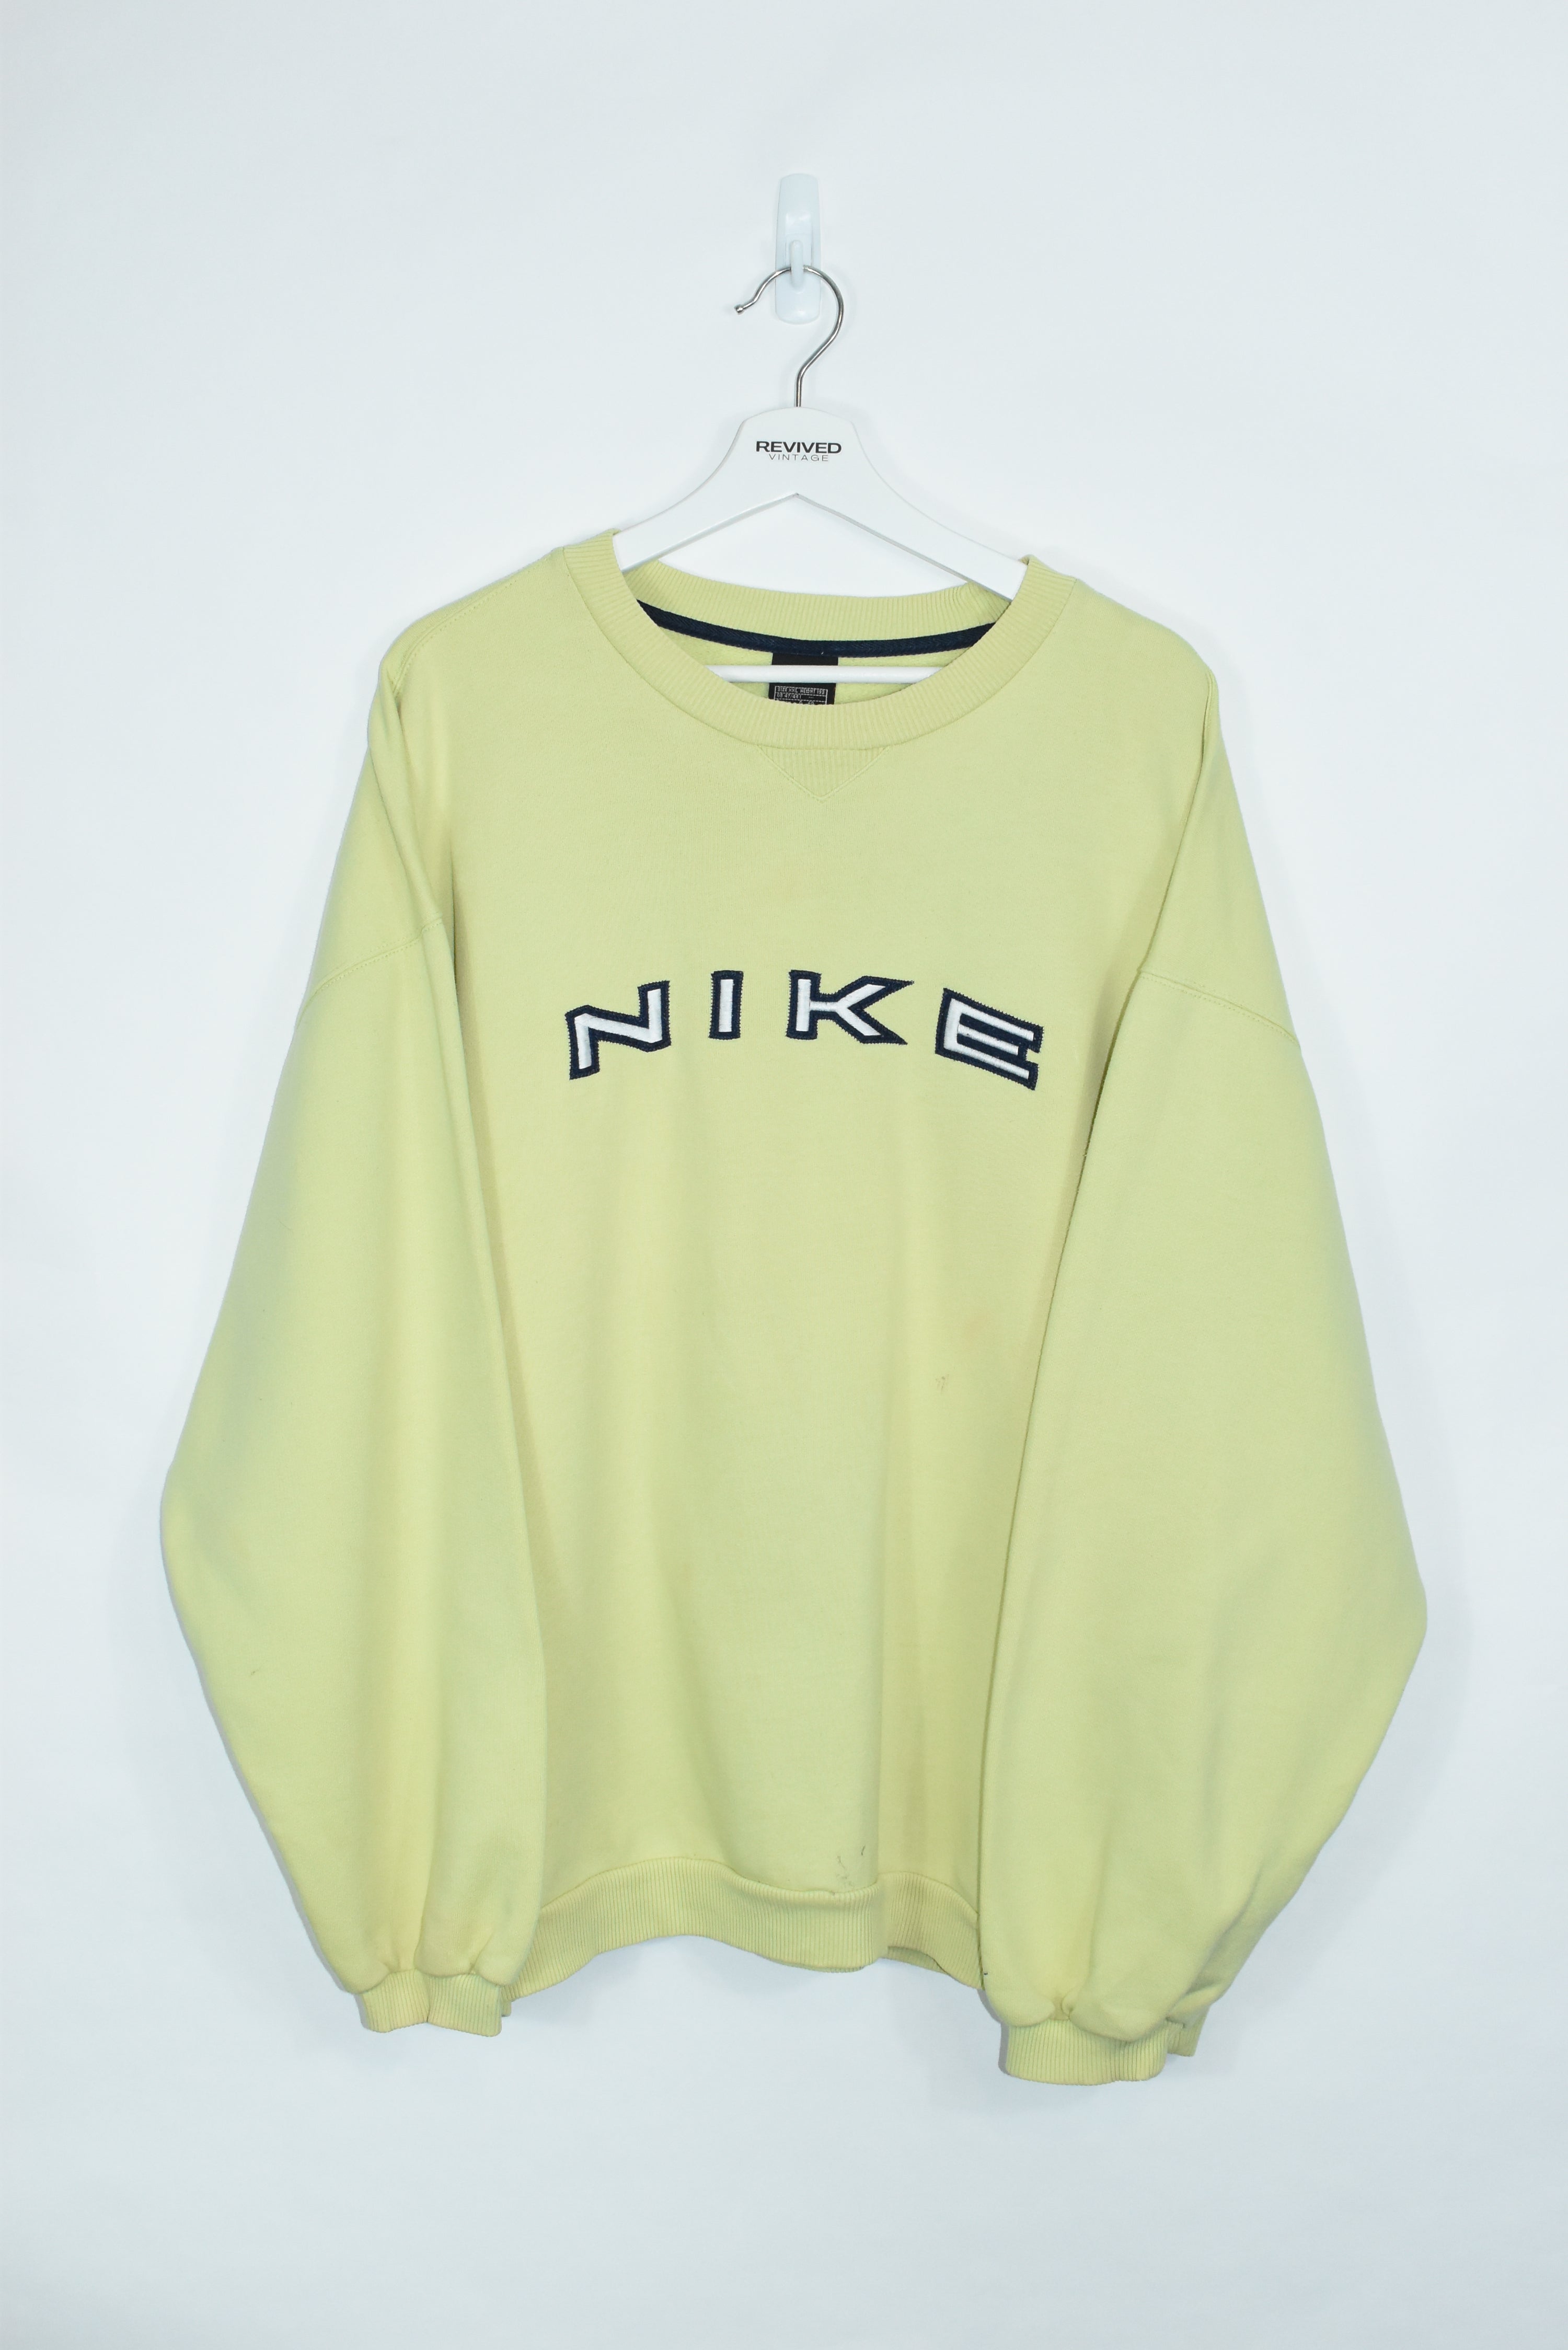 Vintage Nike Embroidery Sweatshirt Yellow XXL